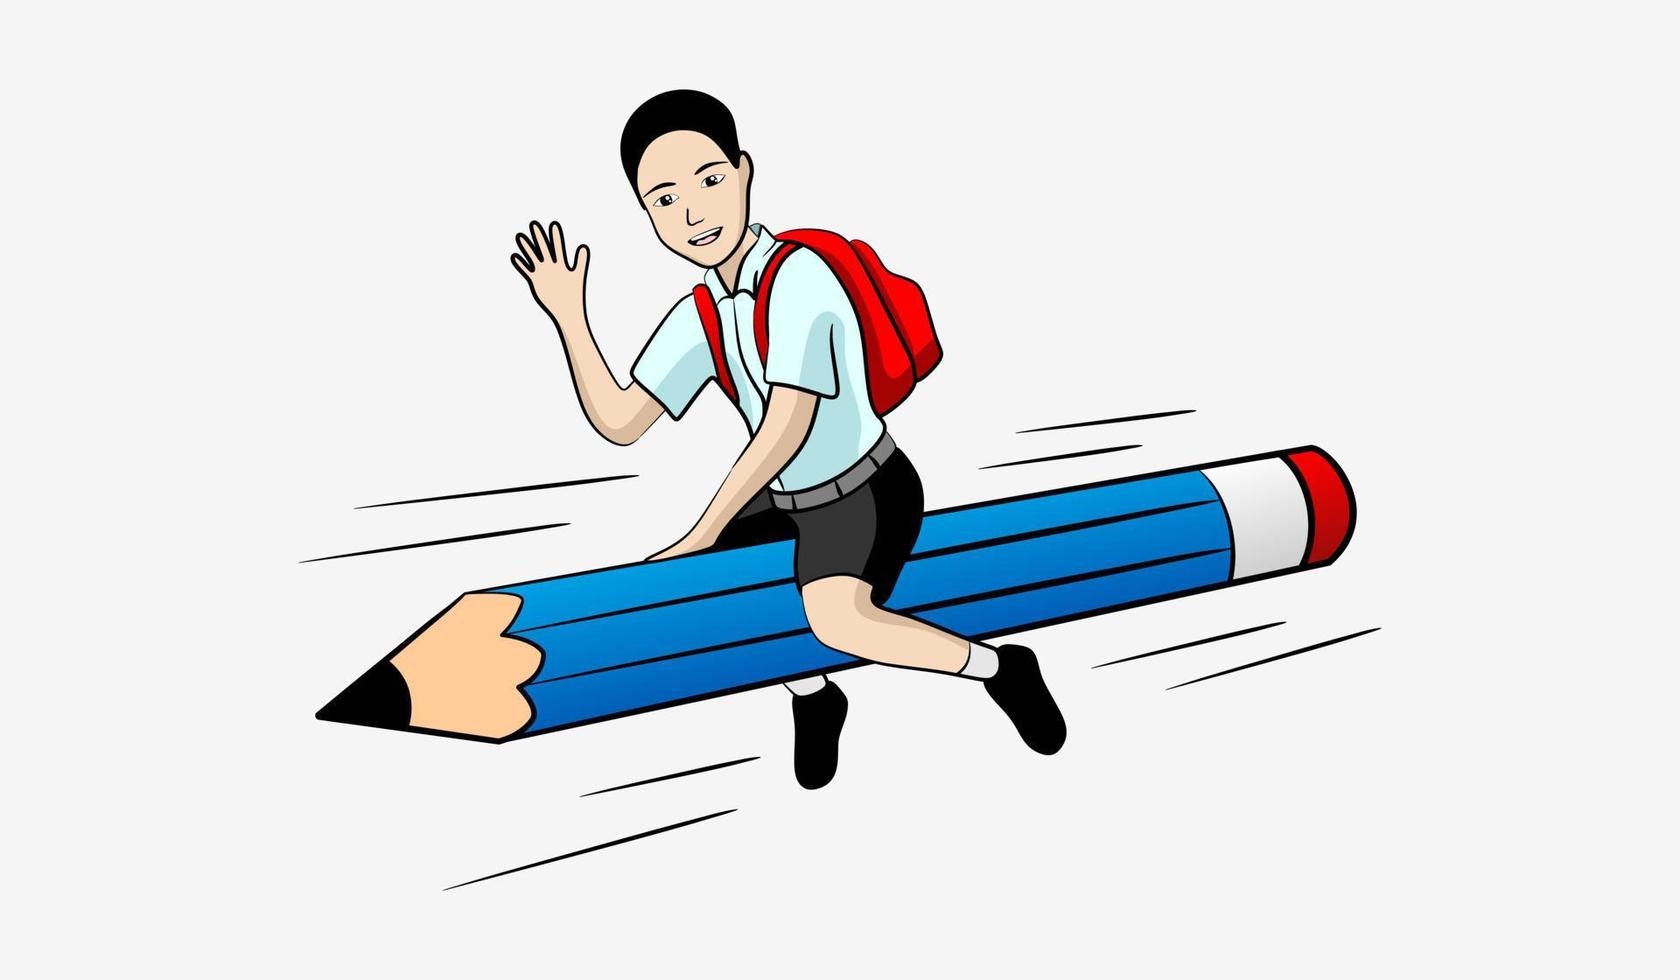 Vektor Junge oder Schüler und Blau Bleistift im Karikatur Form. Illustration von Menschen und fliegend Bleistifte.